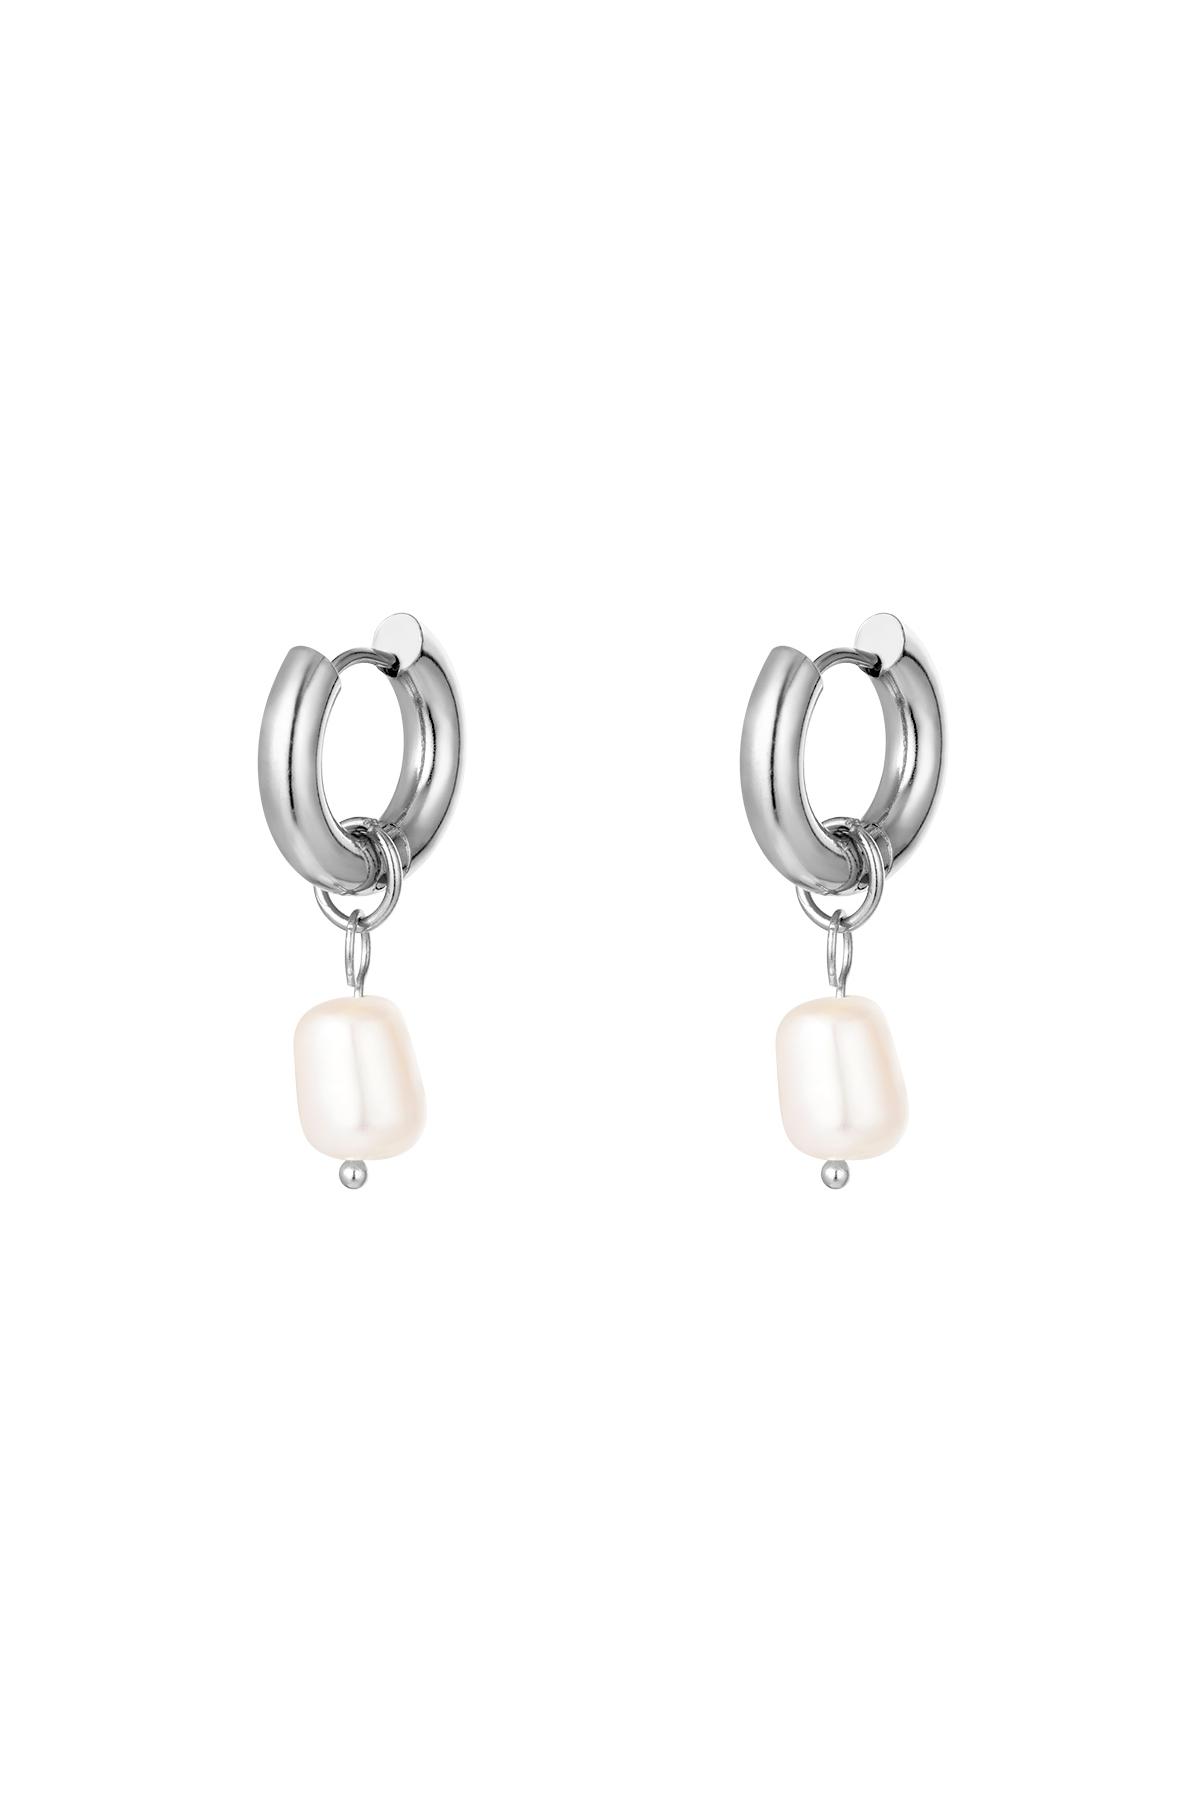 Stainless steel earrings pearls simple Silver